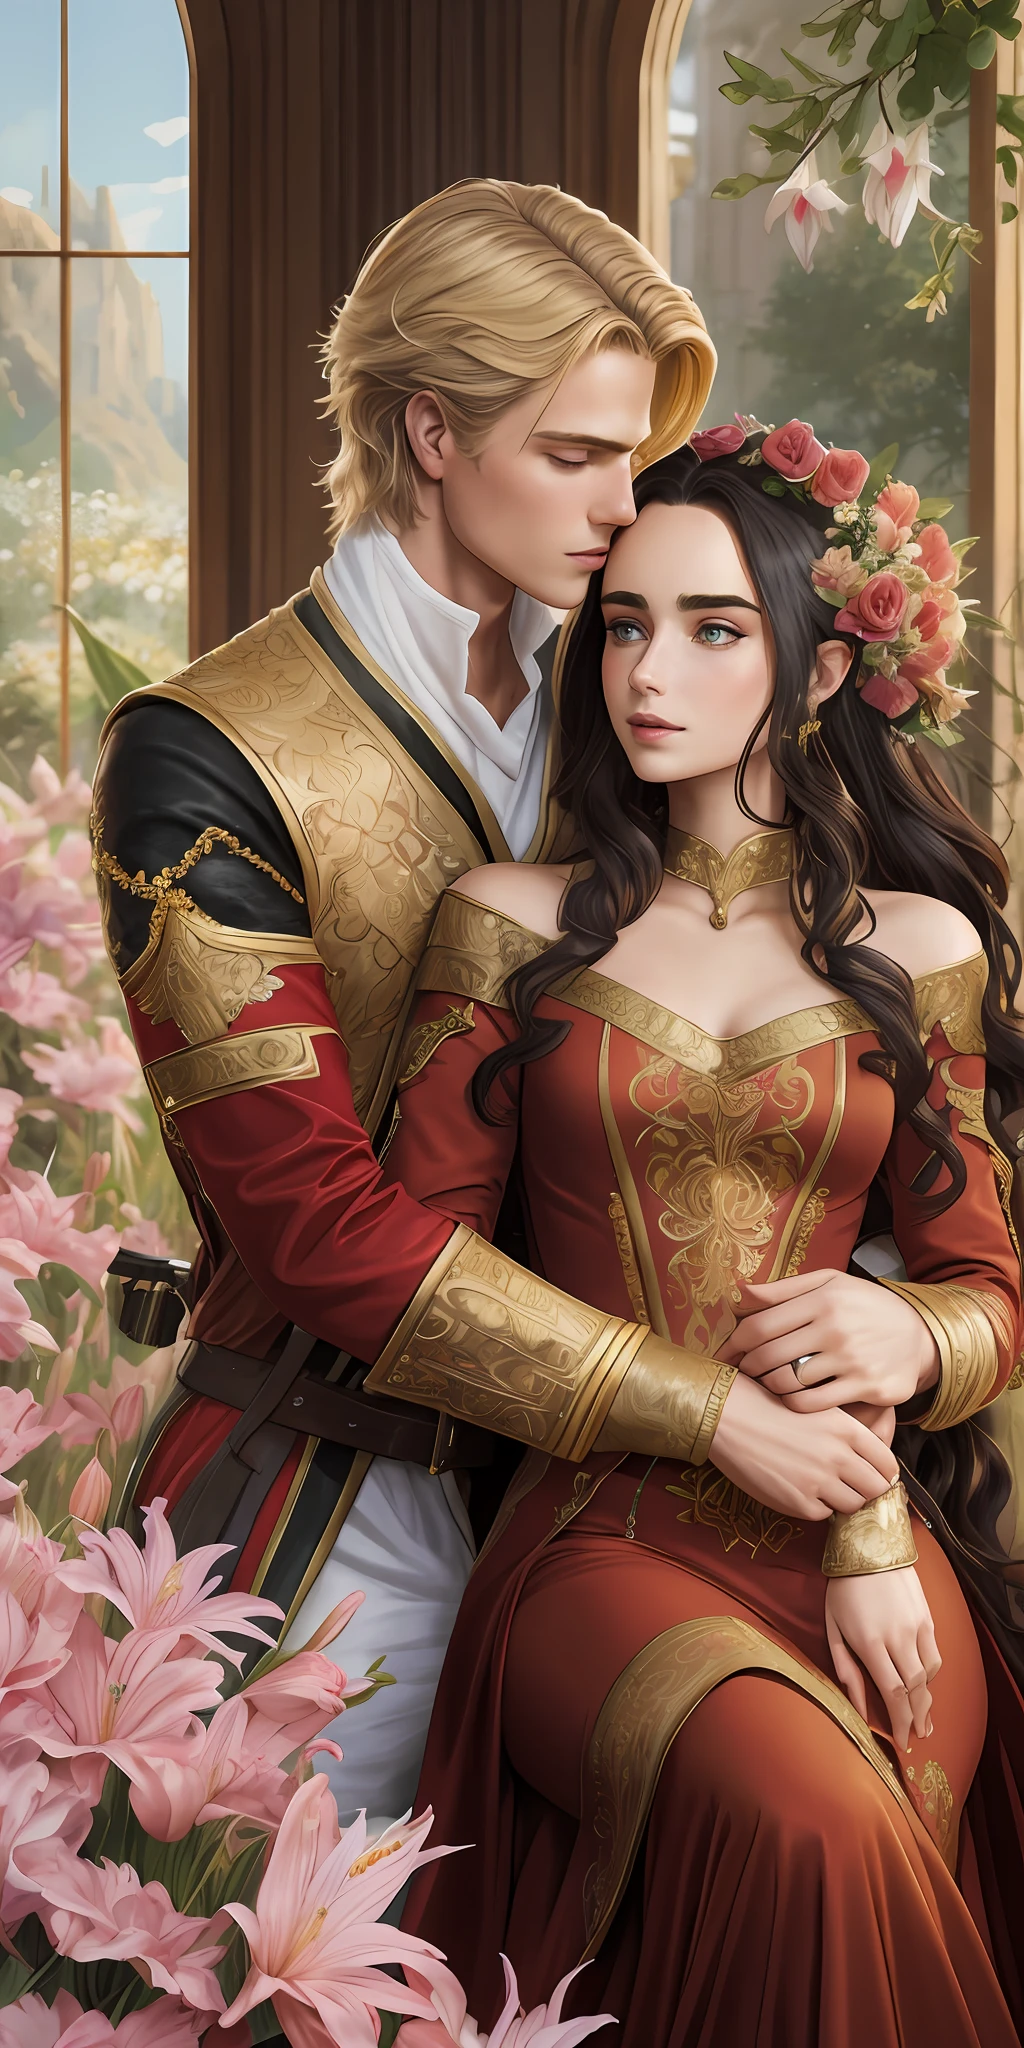 ニールス・ヴィッサーは金色の髪を持つ王子様です, 中世の軍服を着て、平民のリリー・コリンズに恋をしている, 黒い巻き毛を持ち、シンプルな赤いドレスを着ている, 二人はとても愛情深くキスをした, ロマンス小説の表紙のイラスト。, 花でいっぱいの柔らかく明るい背景,  モデル撮影スタイル, (非常に詳細な CG 8K 壁紙), 世界で最も美しいアートワークの全身写真, プロフェッショナルな雄大な油絵, アート：グレッグ・ヒルデブラント, 劉 智恵, ステパン・セジッチ, 三陽, アイクット・アイドグドゥ, ジャスティン・ジェラルド, アルフォンス・ミュシャ, アートジェルム, WLOPとグレッグ・ルトコウスキー